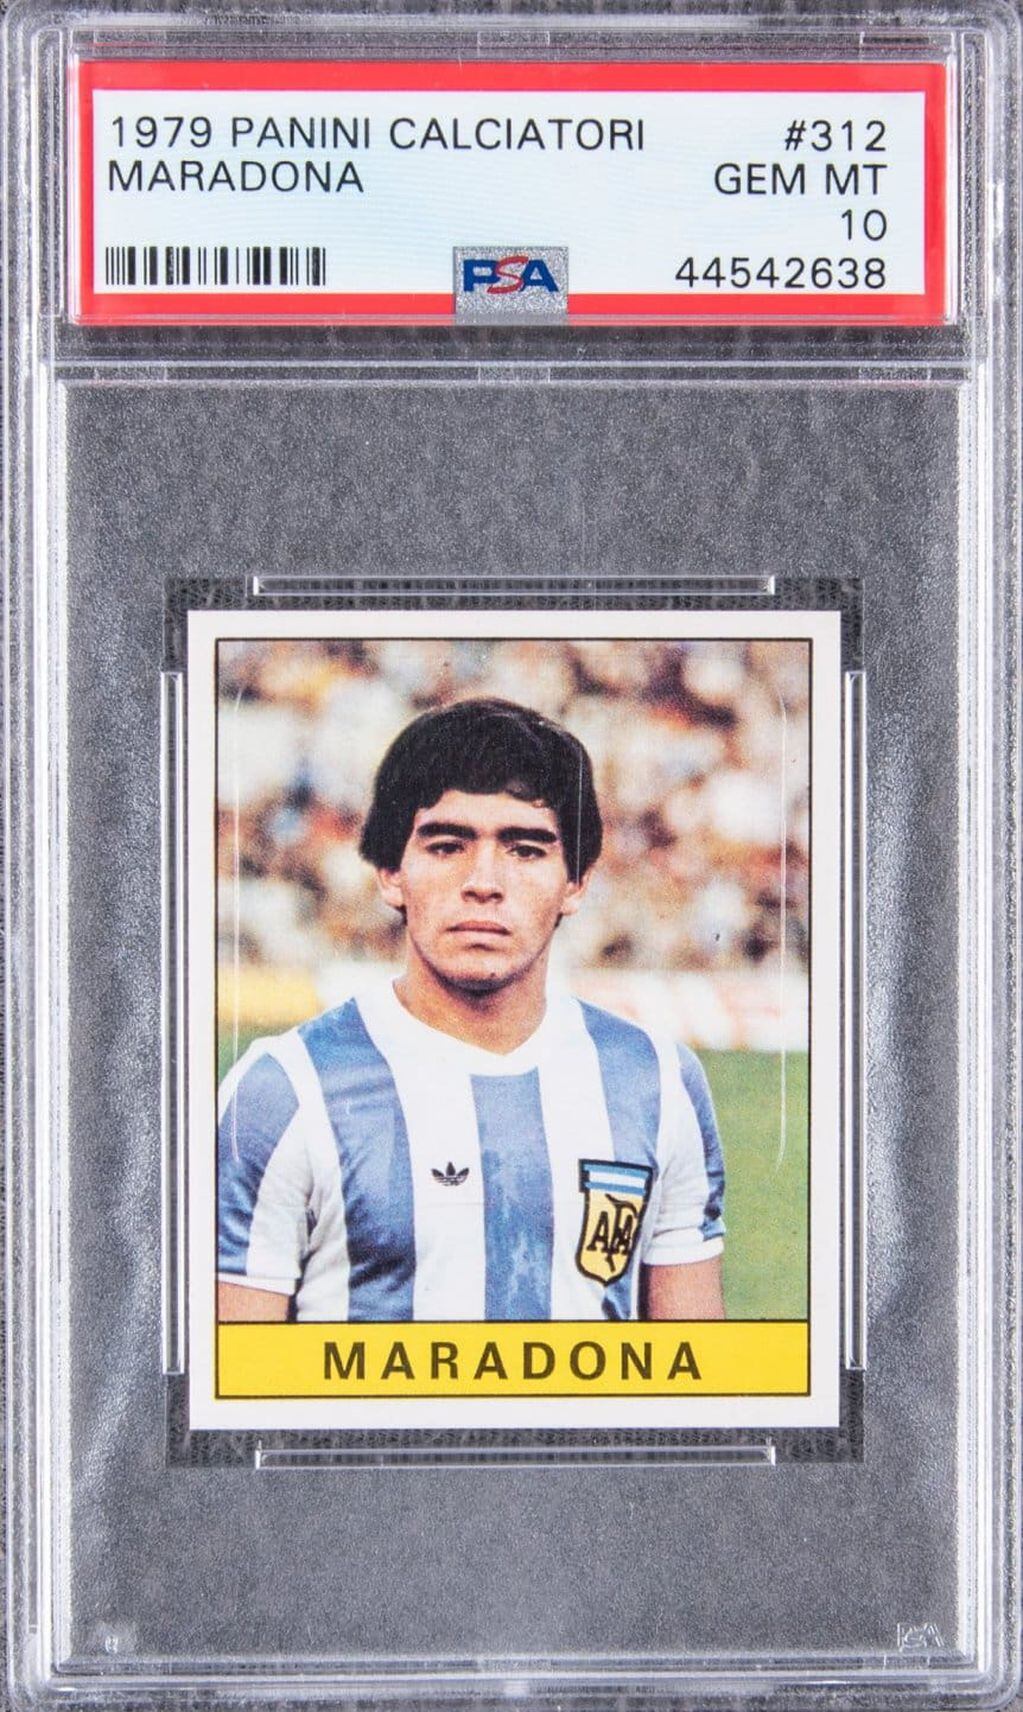 La figurita de Diego Maradona en el mundial juvenil de 1979